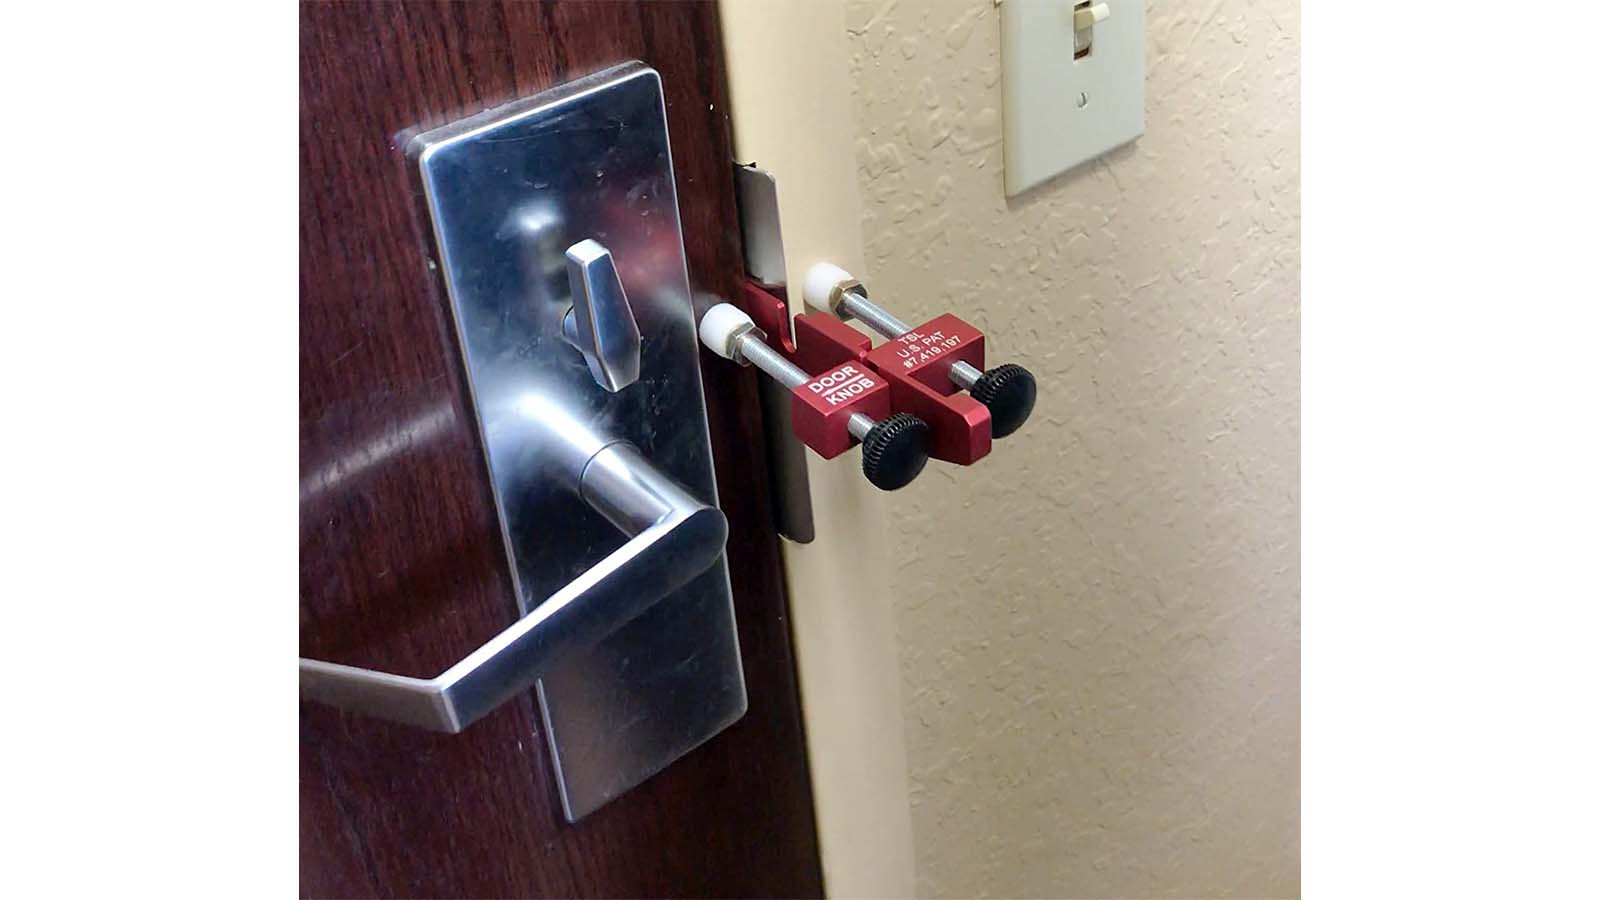 Portable Door Lock Home Security Door Locker Hotel Door Locks for Travelers  Travel Lock for Door Safety Locks from Inside Bedroom Hotel Rooms Home